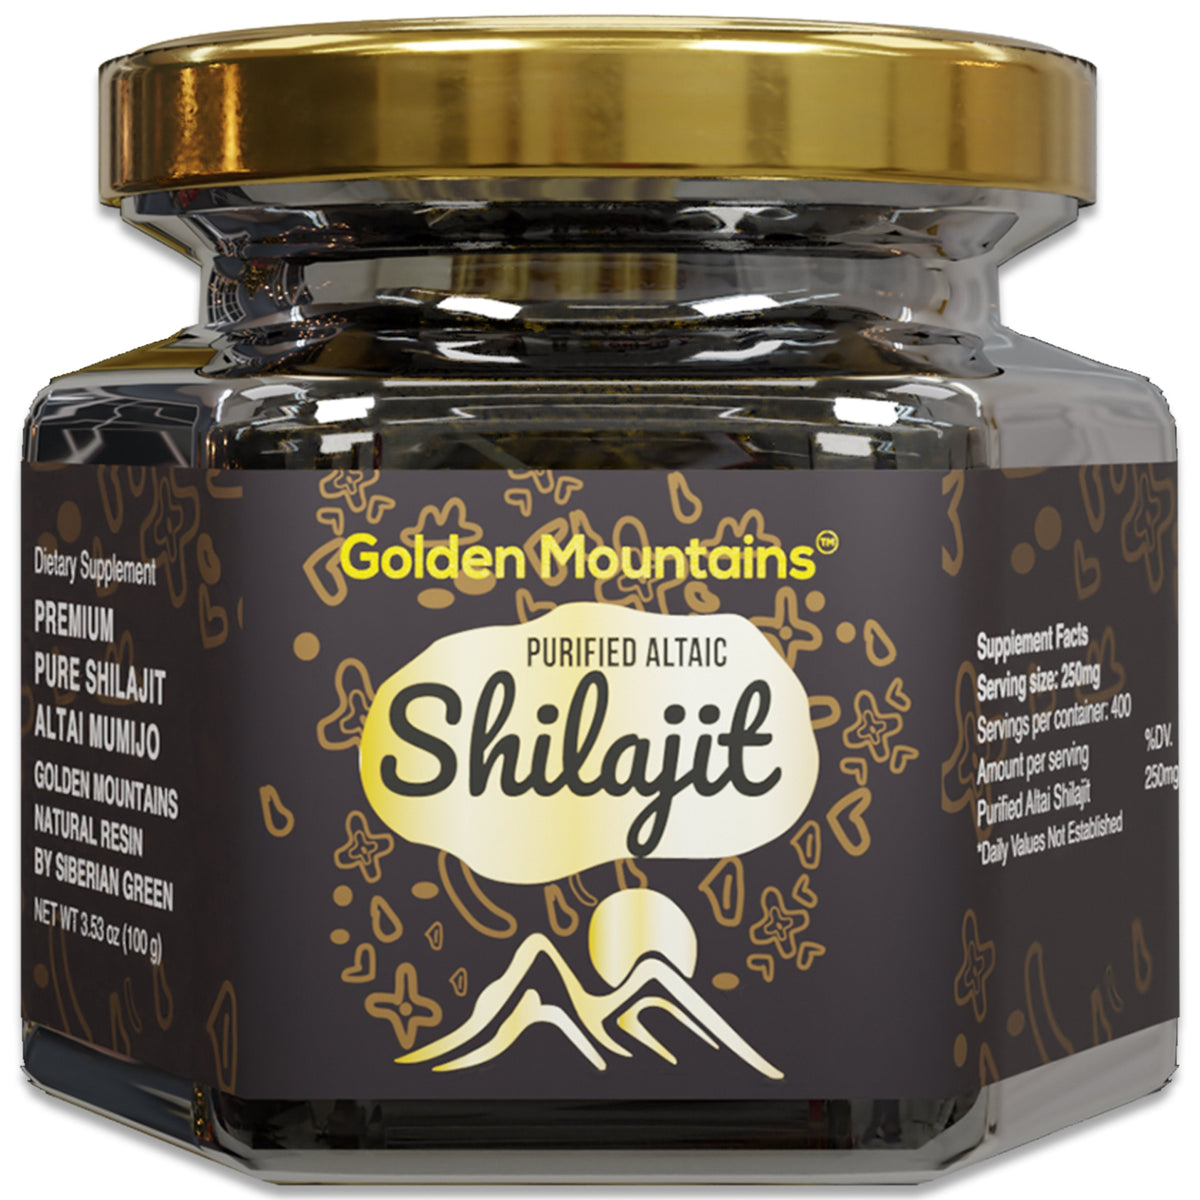 Golden Mountains Shilajit Resin Premium Pure Authentic Siberian Altai 100g - Cuillère à mesurer - Certificat de qualité exclusif